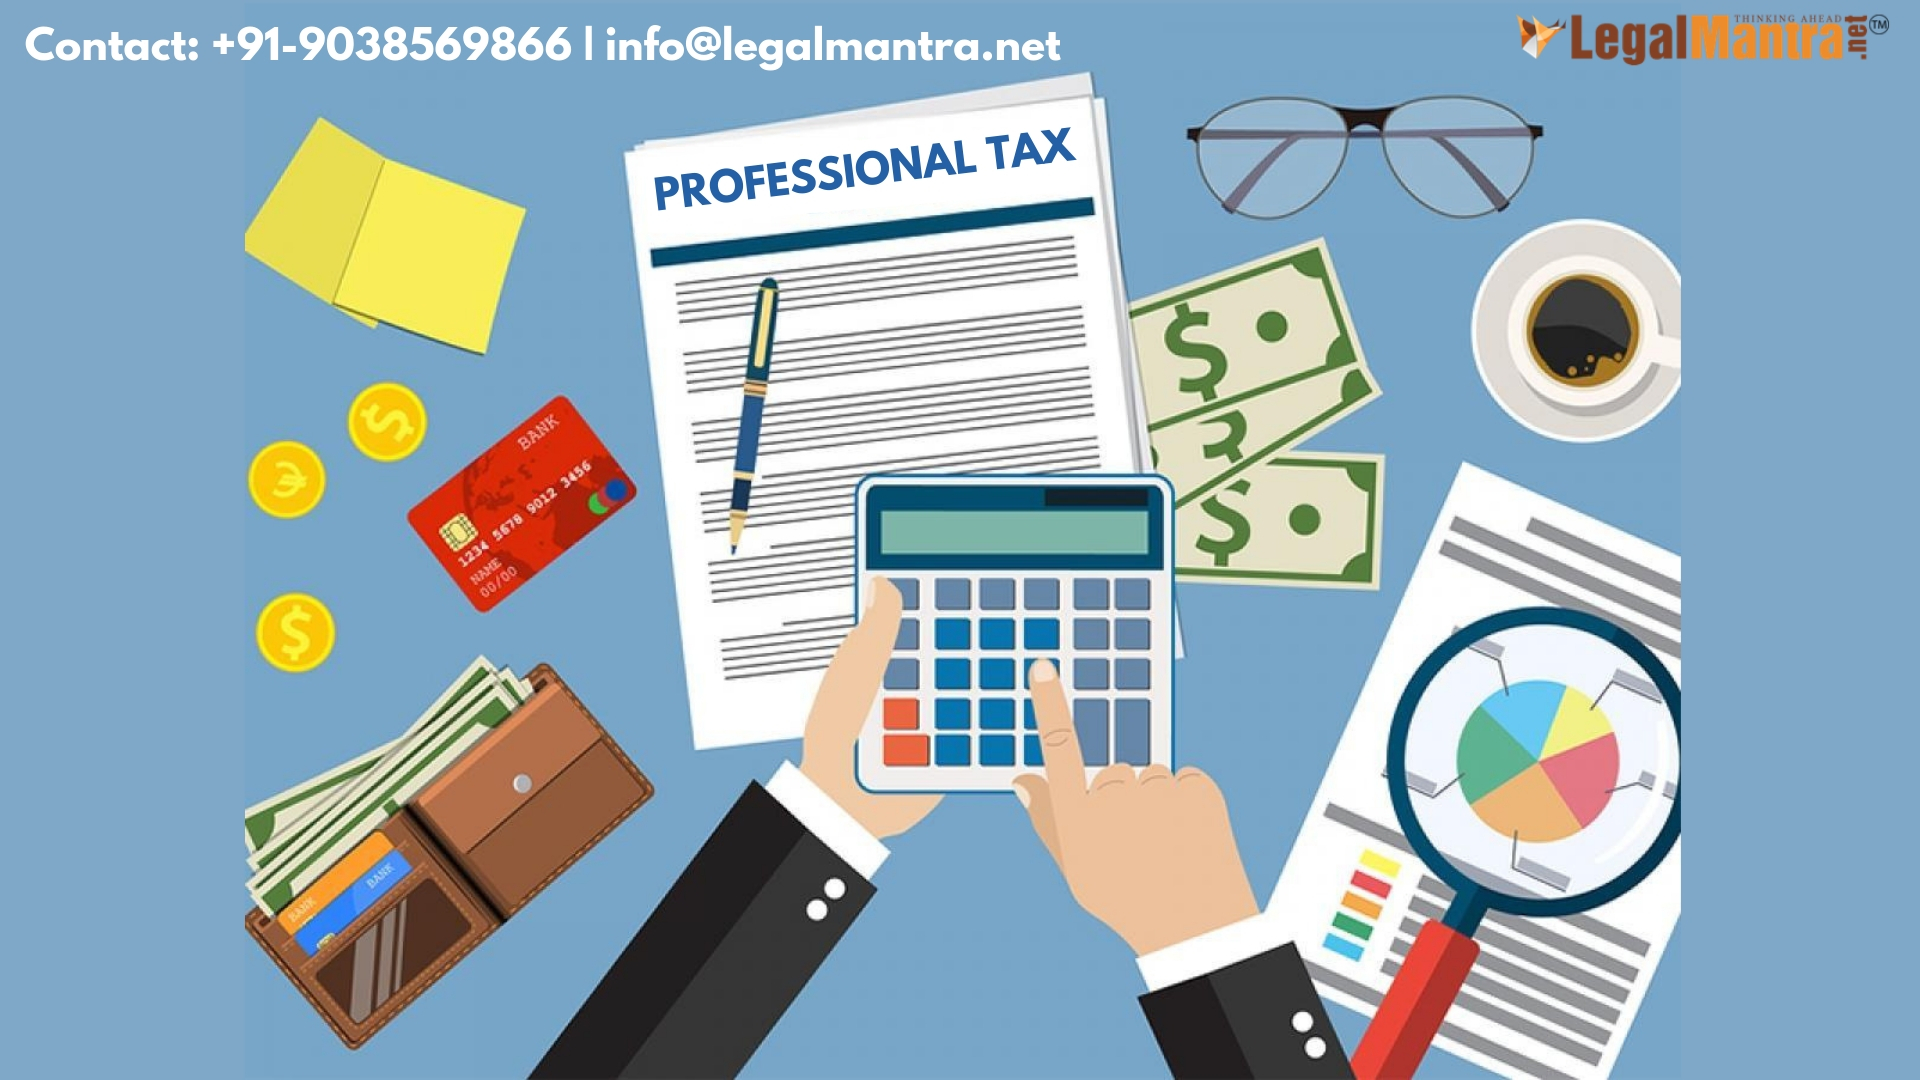 Online Professional Tax registration